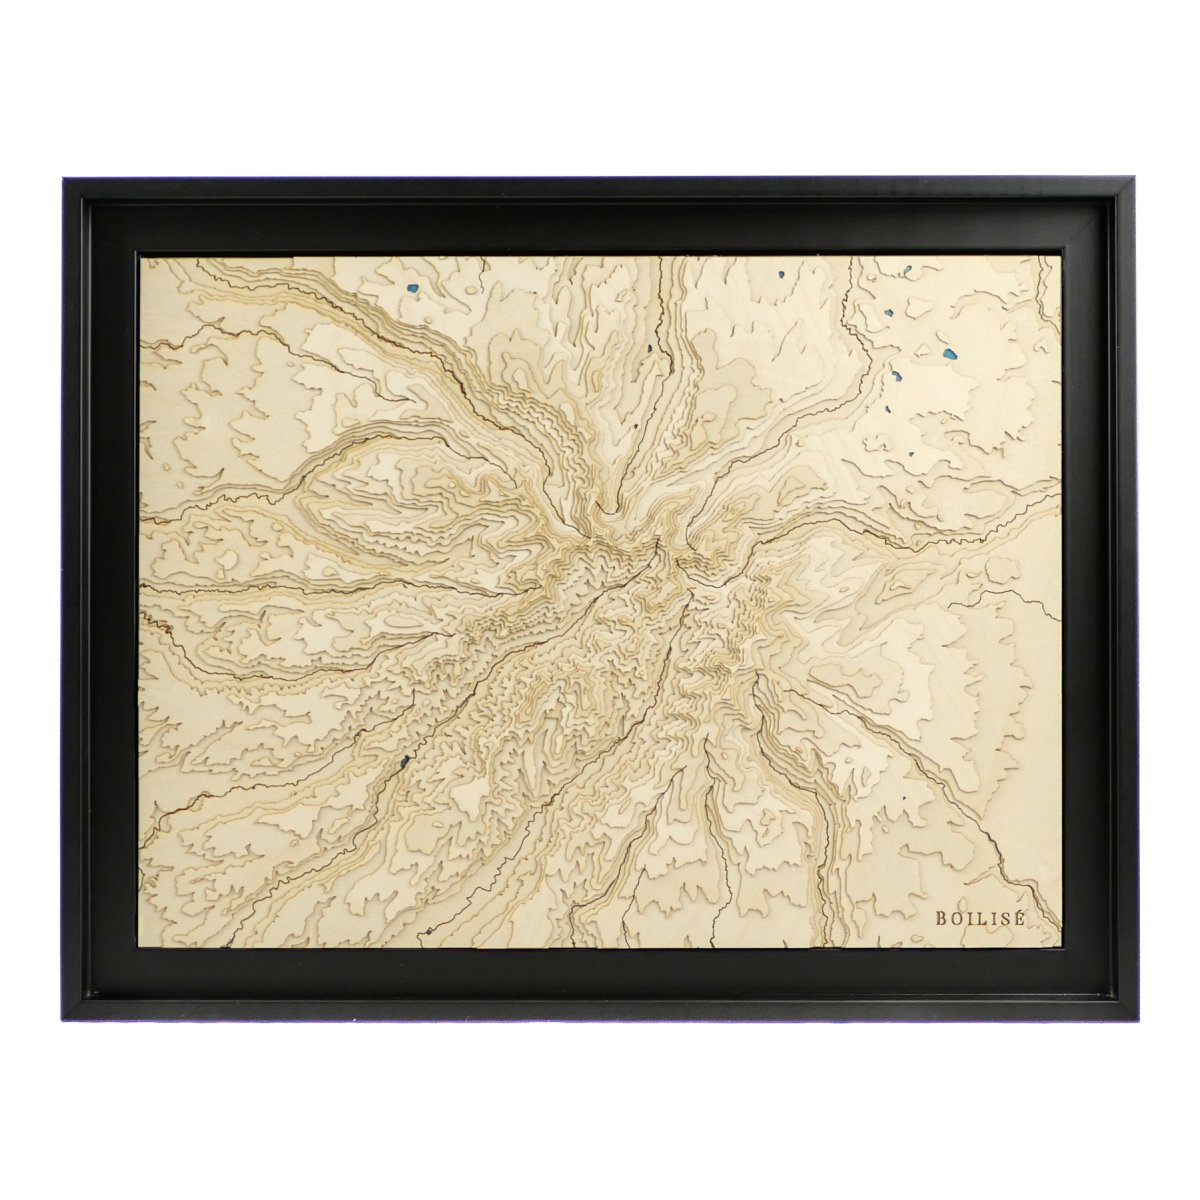 Carte topographique en relief des Monts du Cantal dans une caisse américaine noire